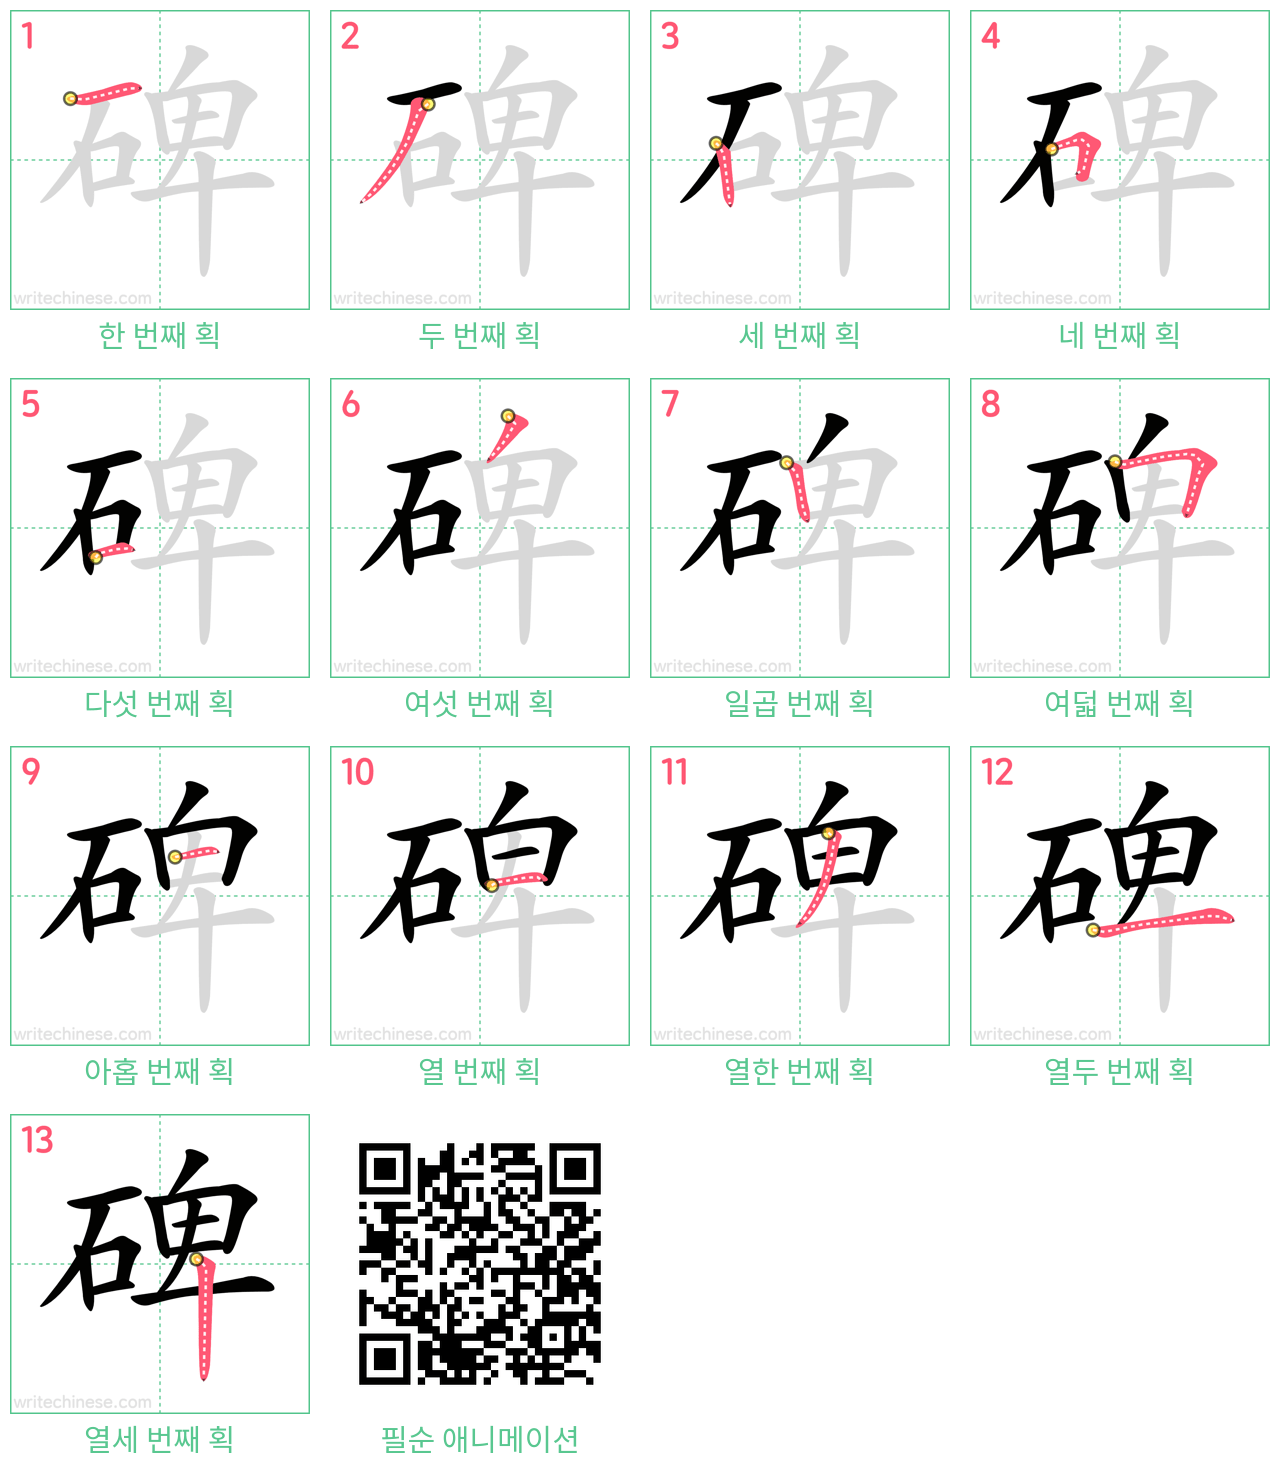 碑 step-by-step stroke order diagrams